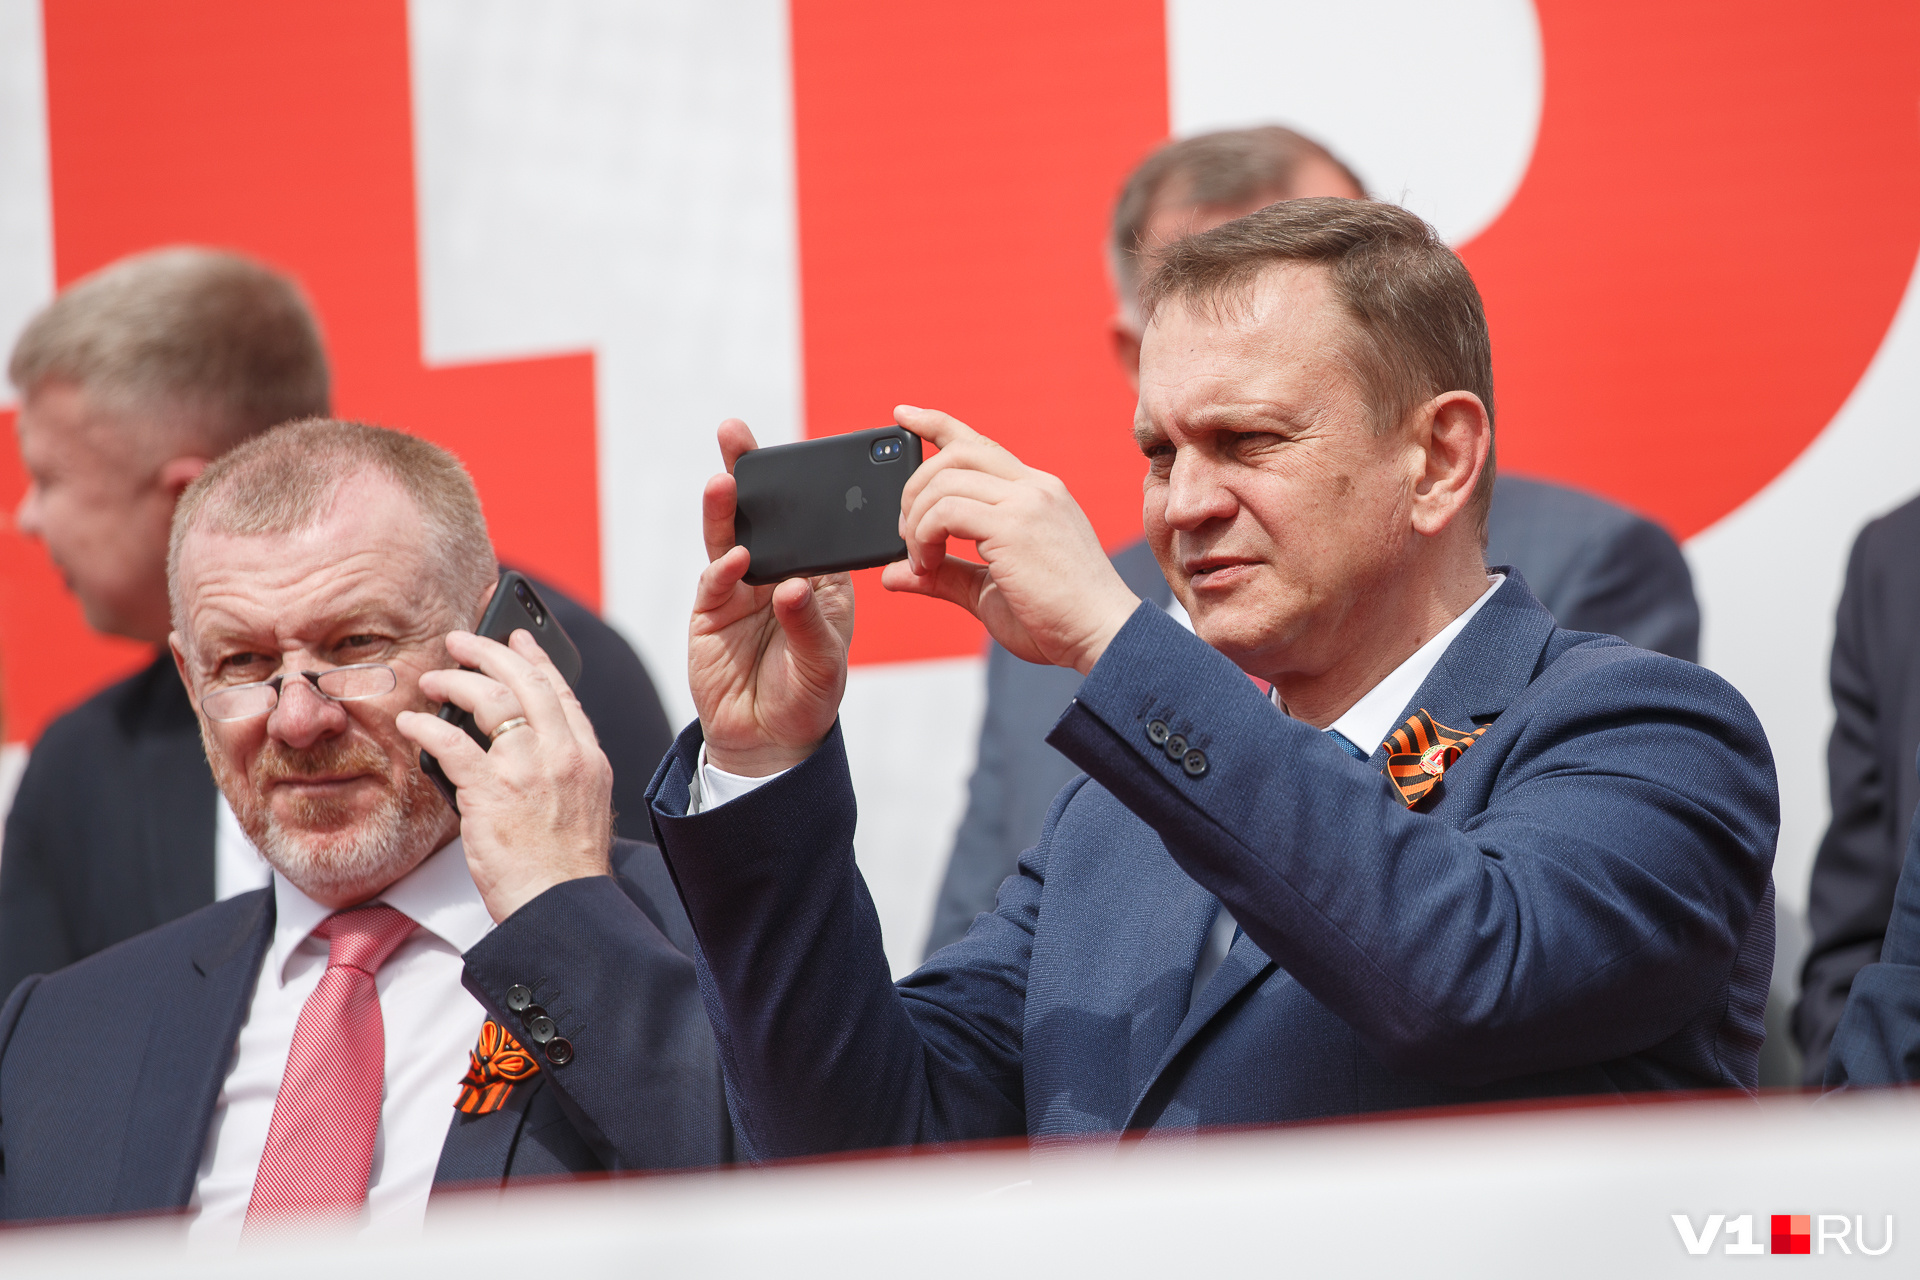 Слева — сенатор Сергей Горняков. Владелец iPhone справа — подписывающий за губернатора постановления Евгений Харичкин<br>